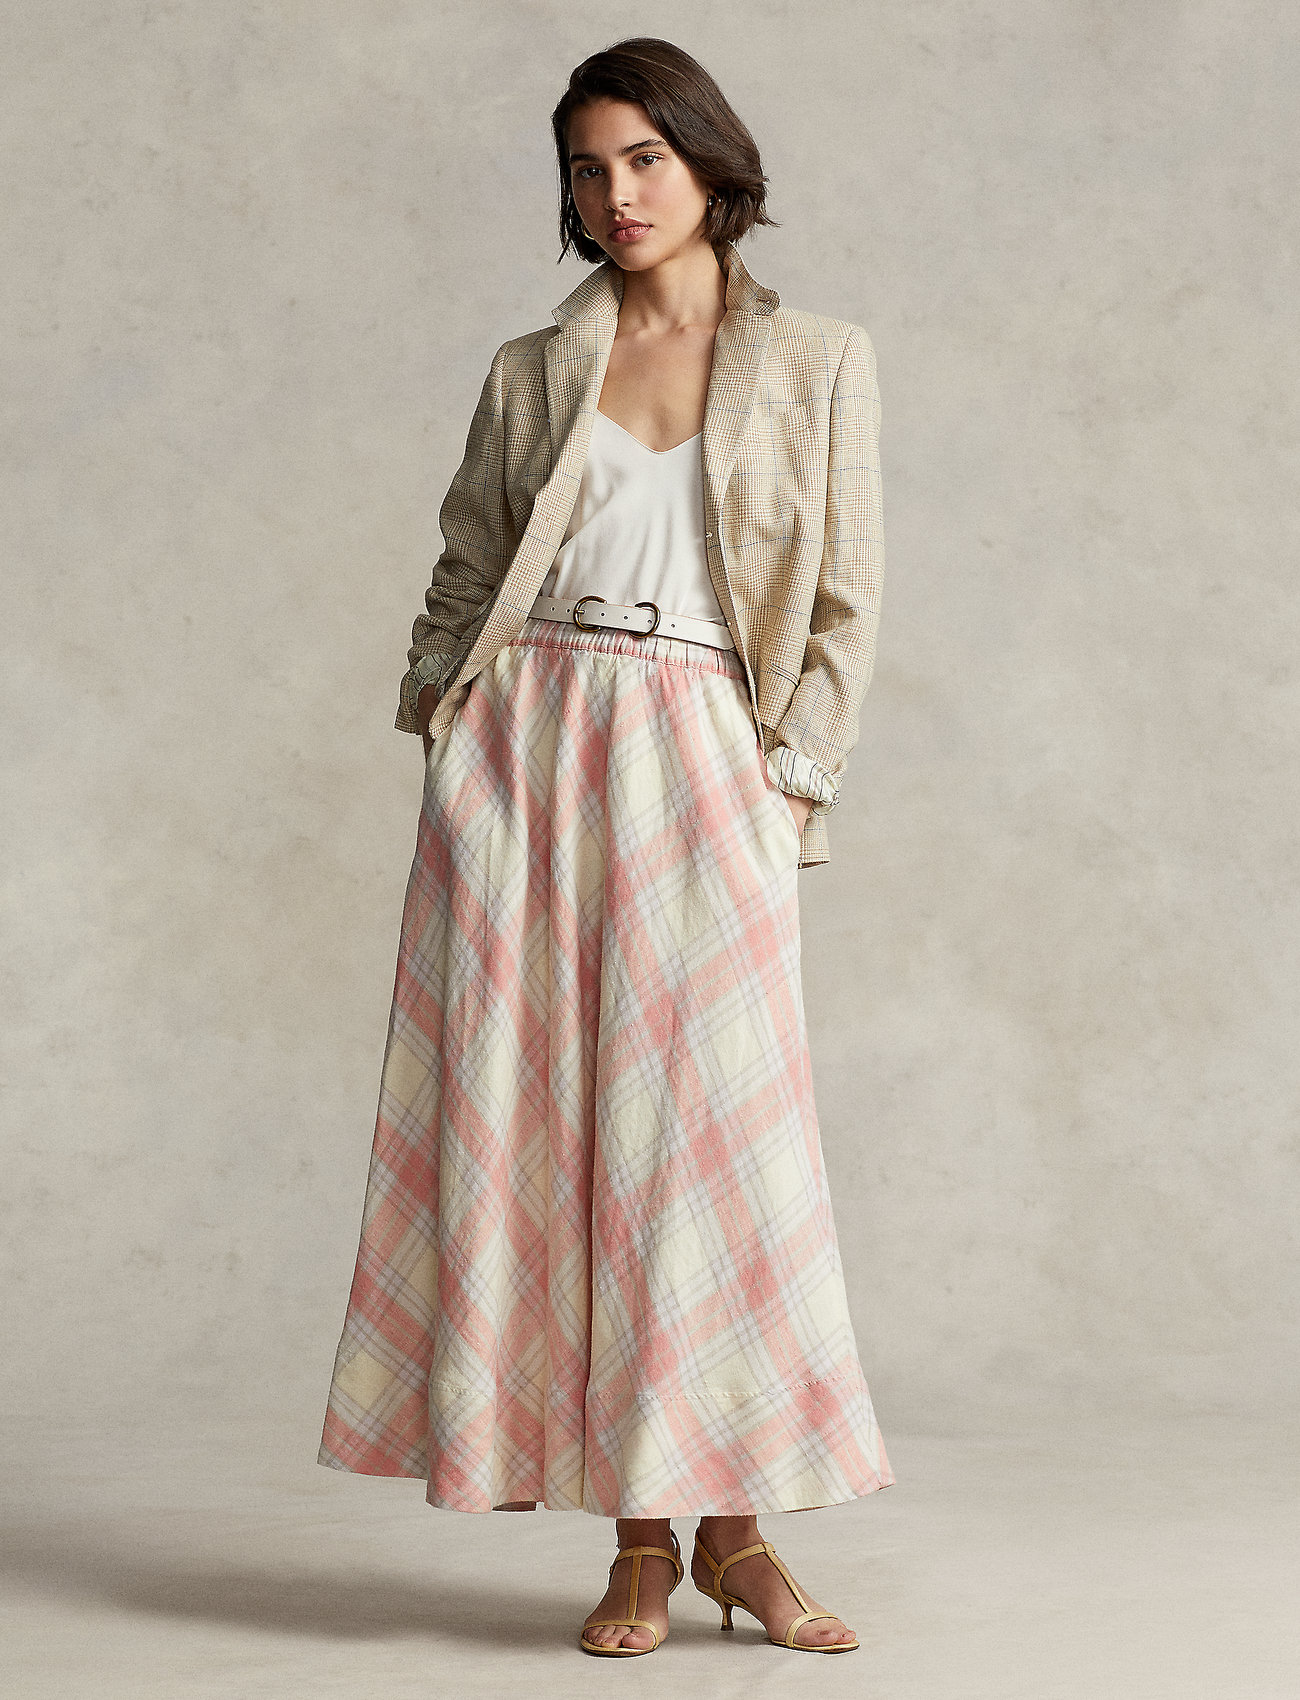 Polo Ralph Lauren Plaid Linen Maxiskirt - Maxi skirts 